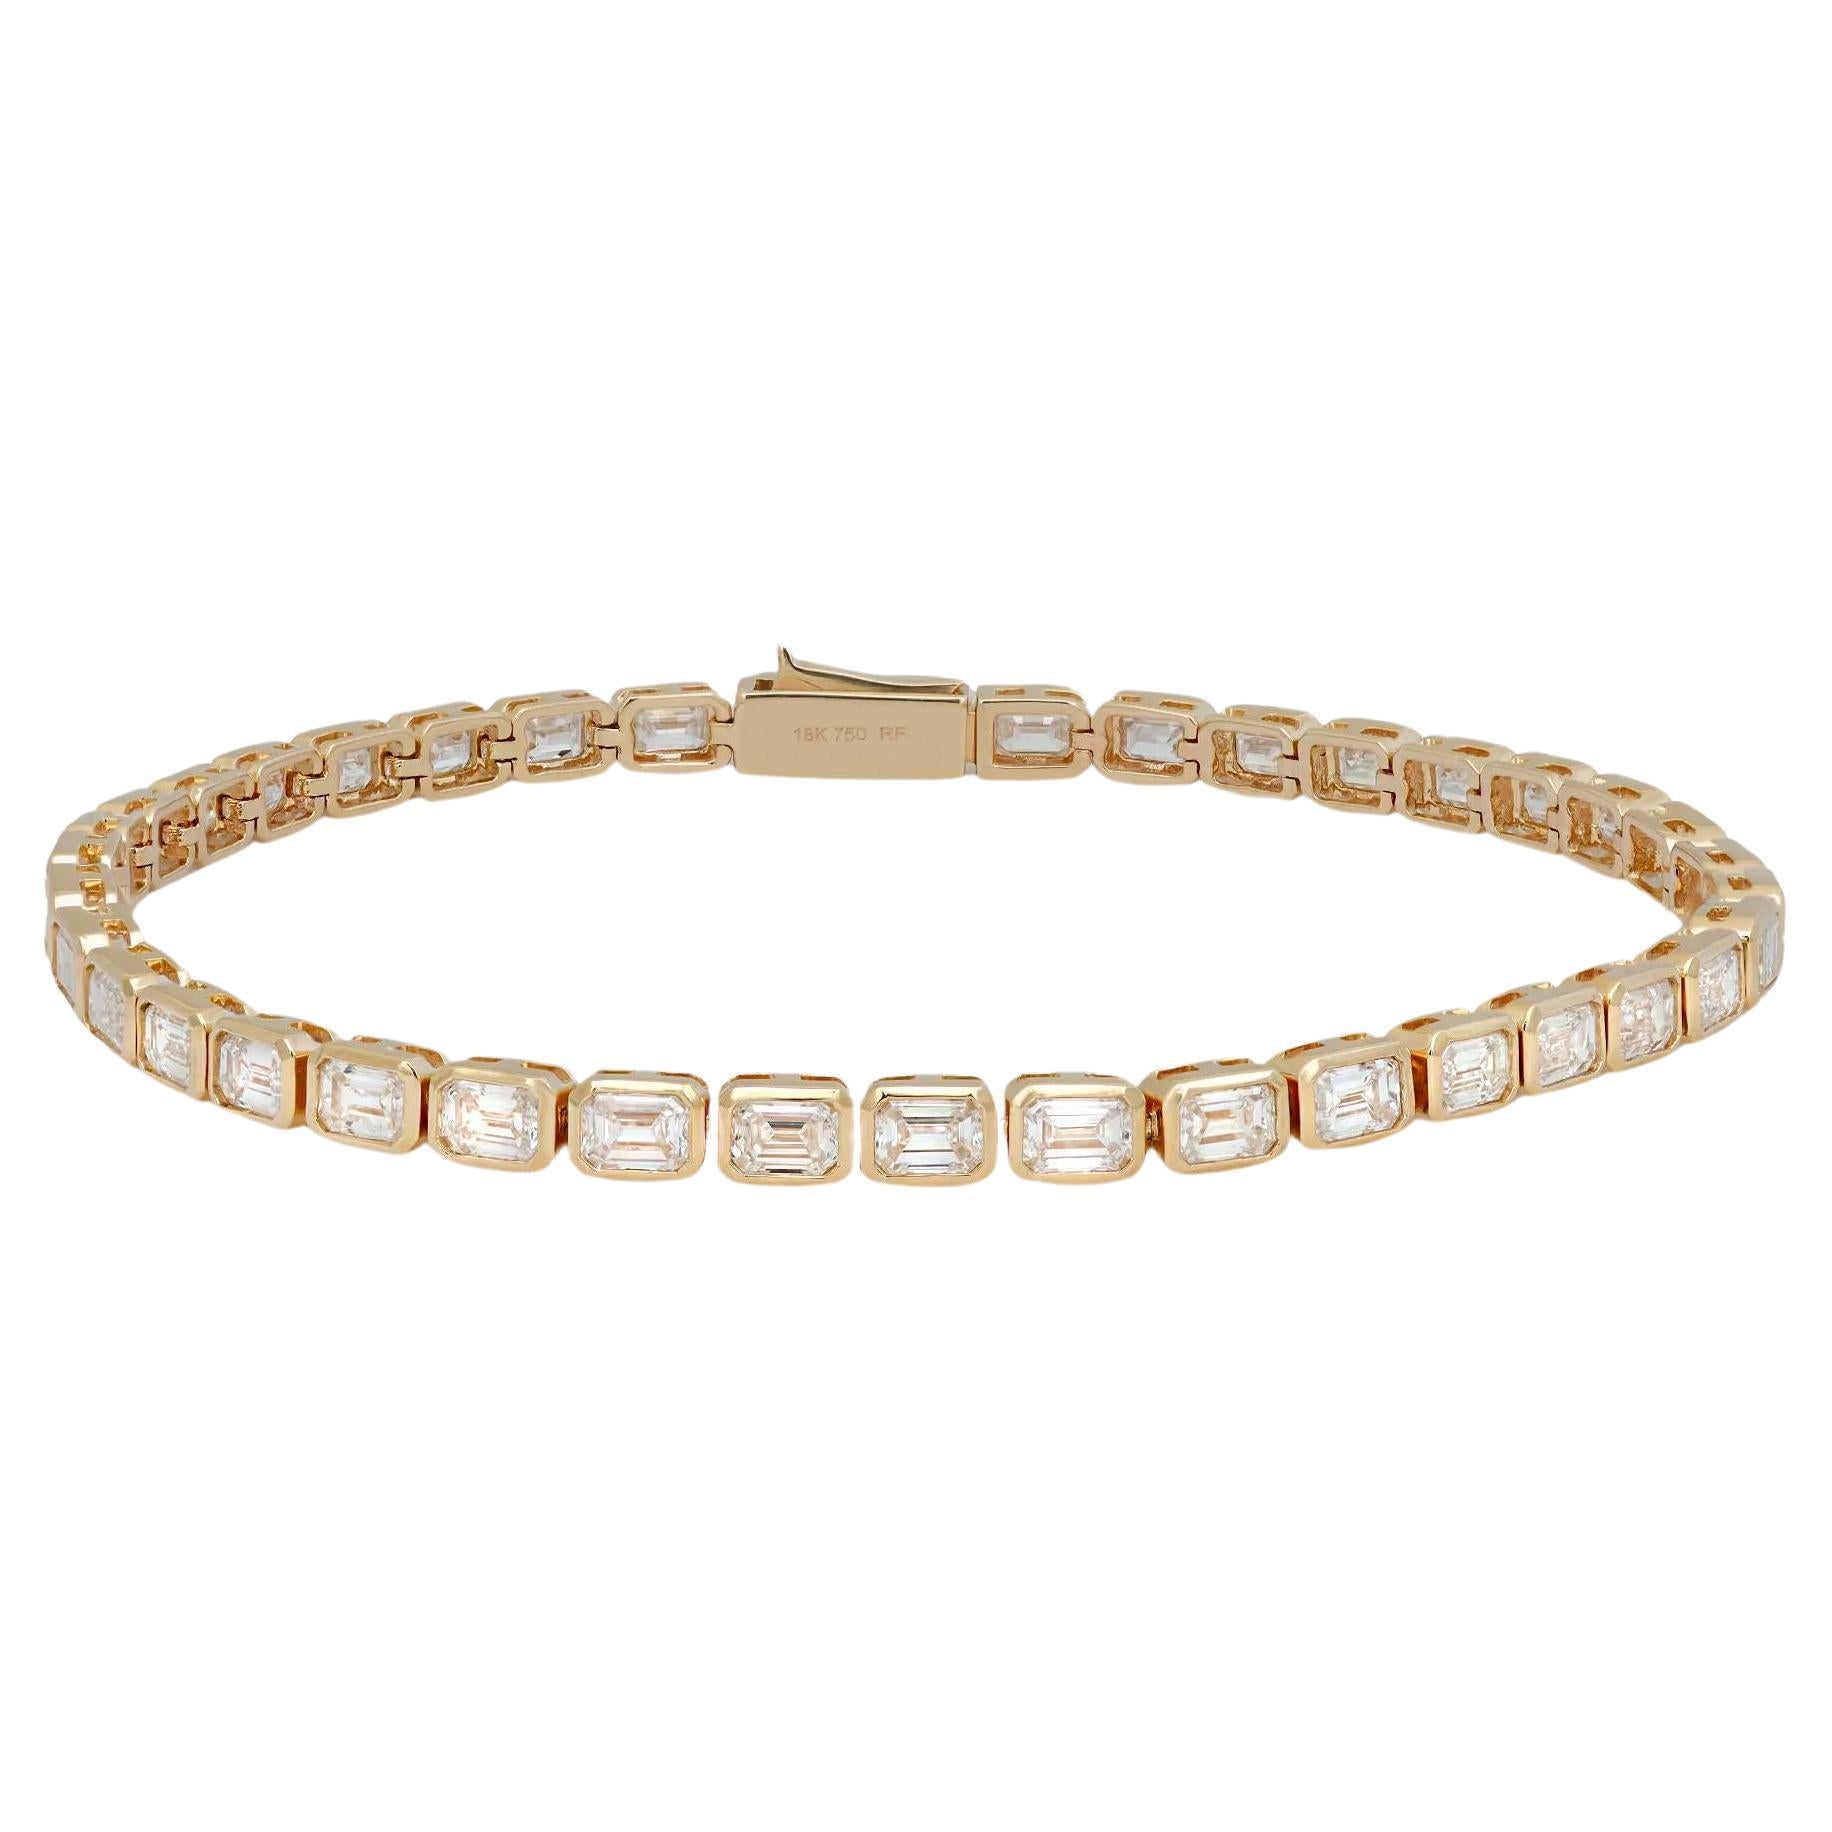 Bracelet tennis en or jaune 18 carats avec diamants taille émeraude de 5,16 carats, lunette est-ouest